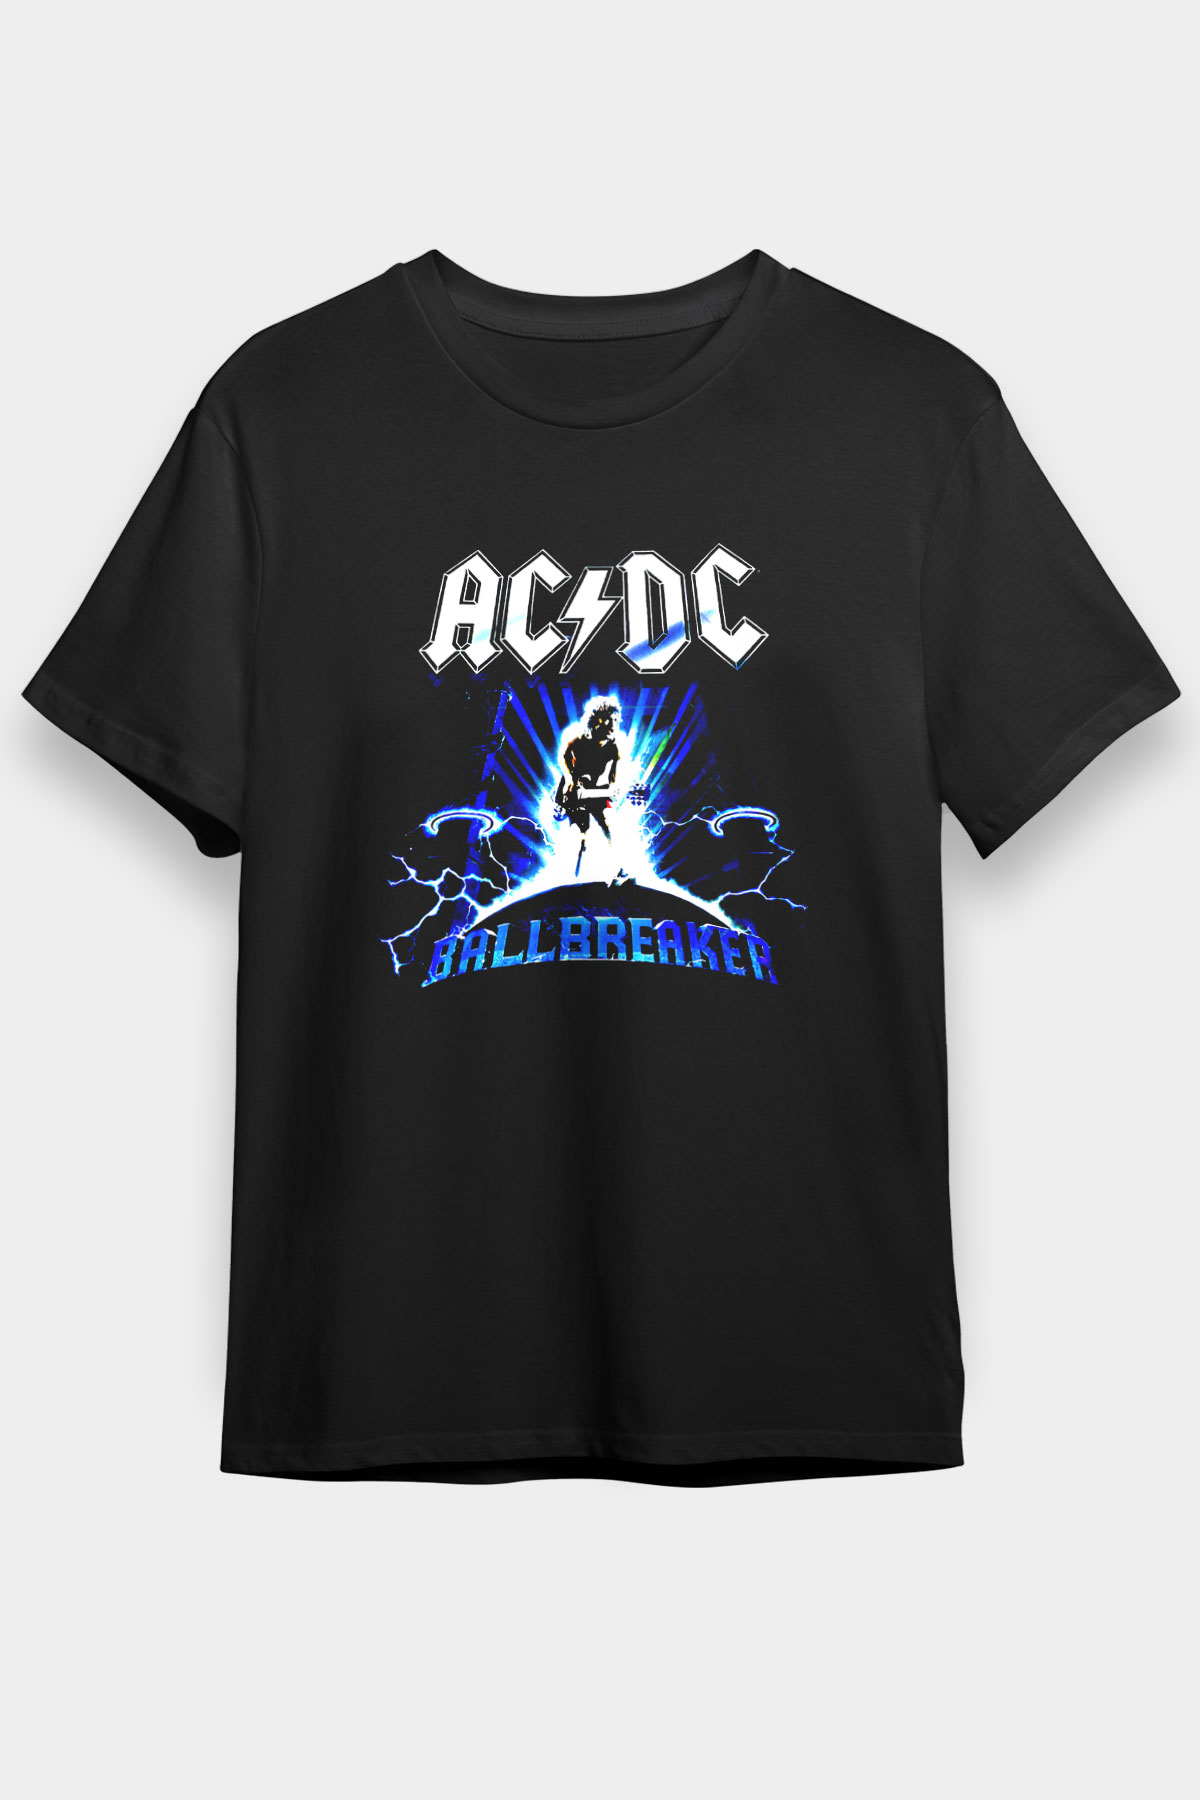 AC DC,Ballbreaker,Black Unisex T Shirt 008  /